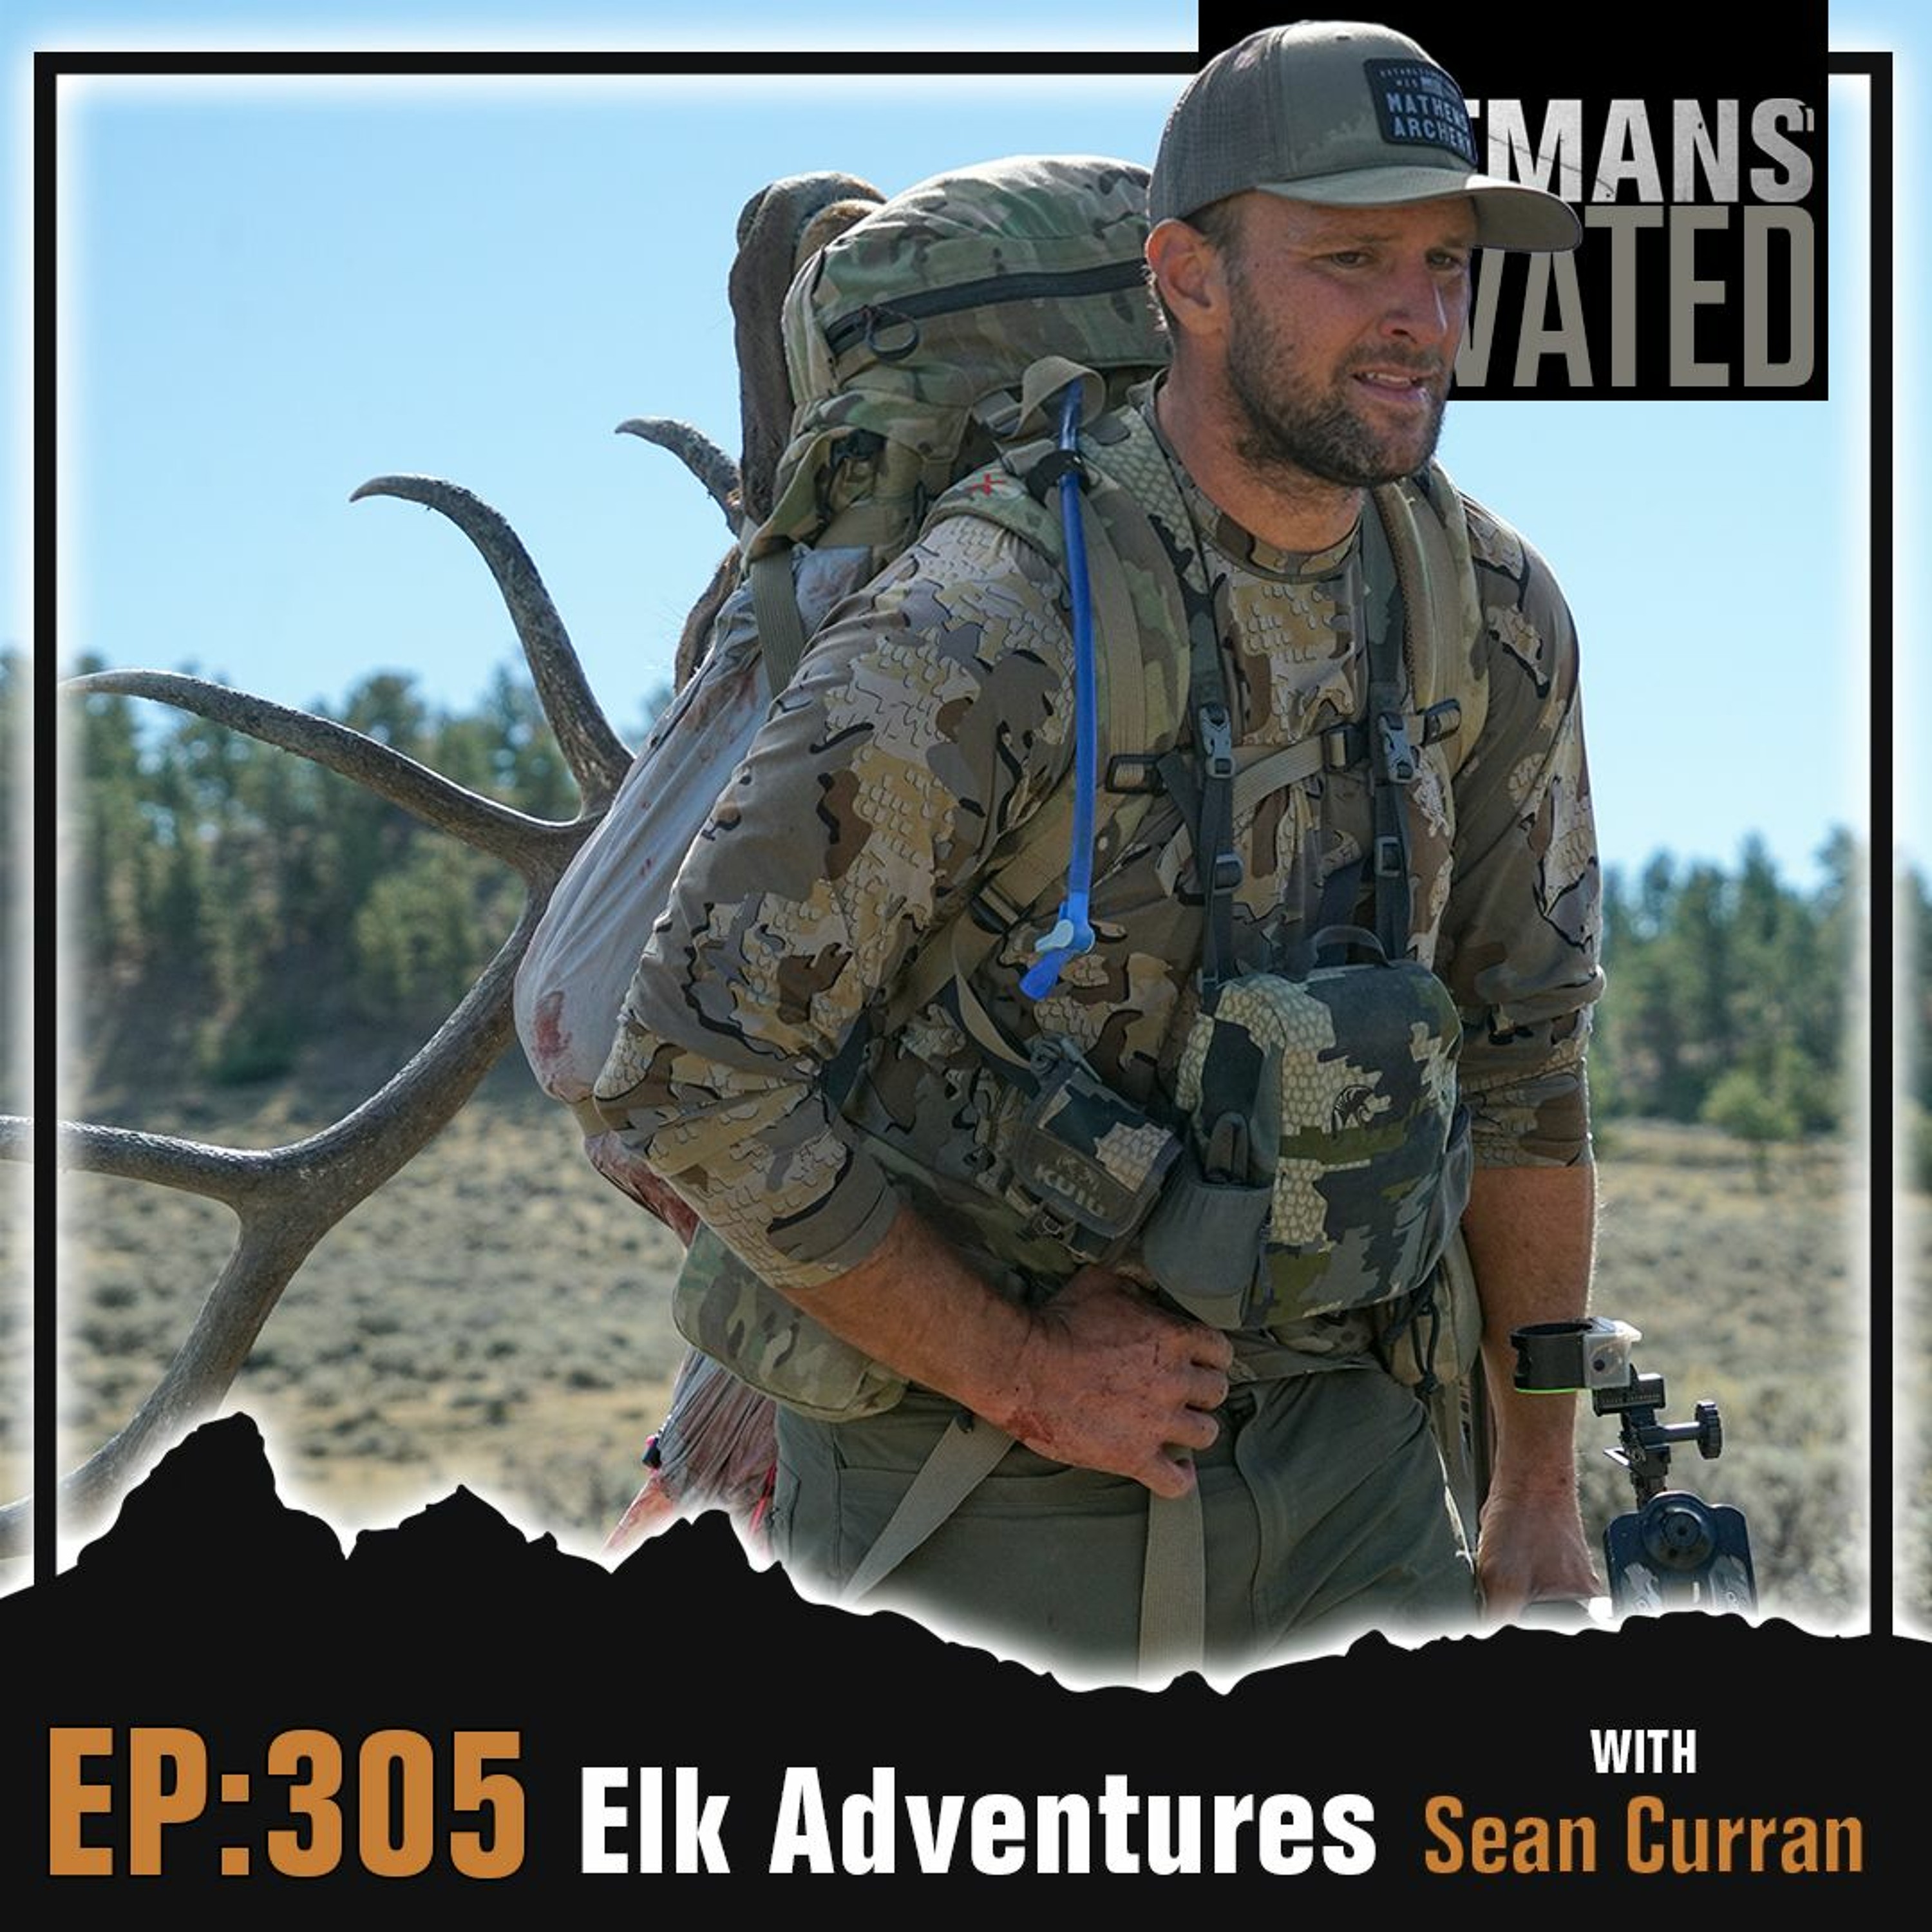 Episode 305: Elk Adventures with Sean Curran